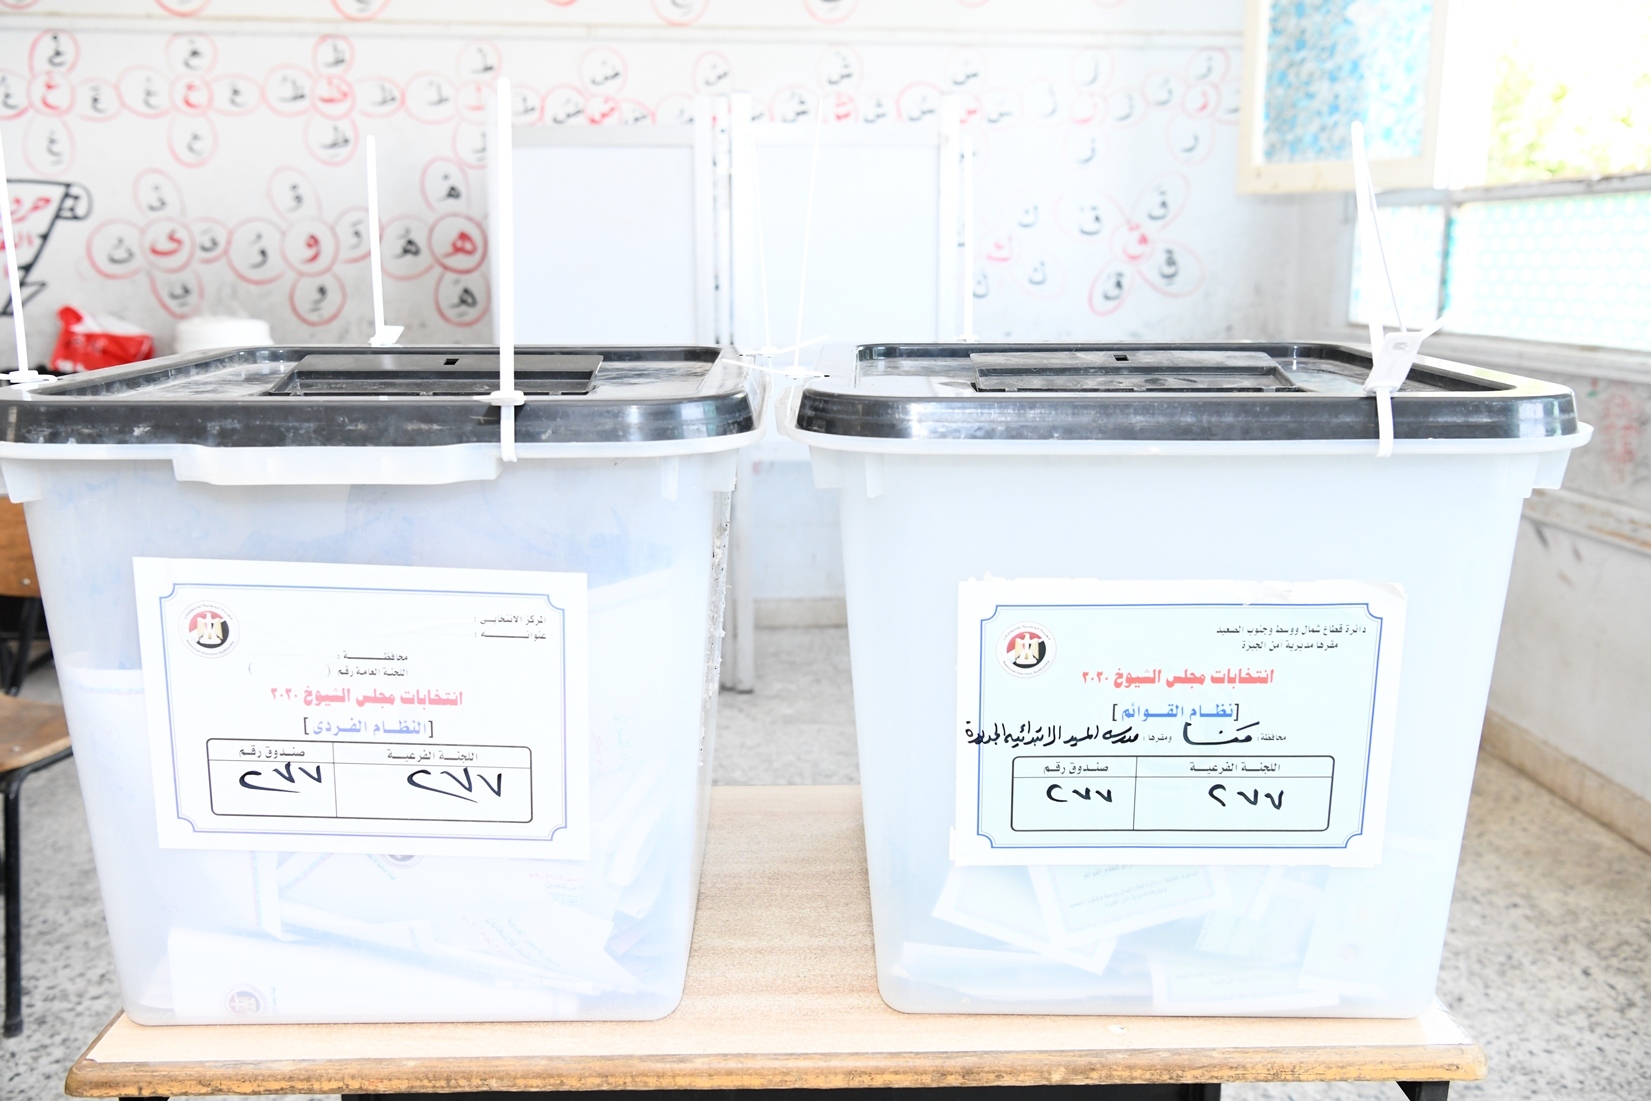   صور«حازم عمر» يتابع سير العملية الانتخابية بعدد